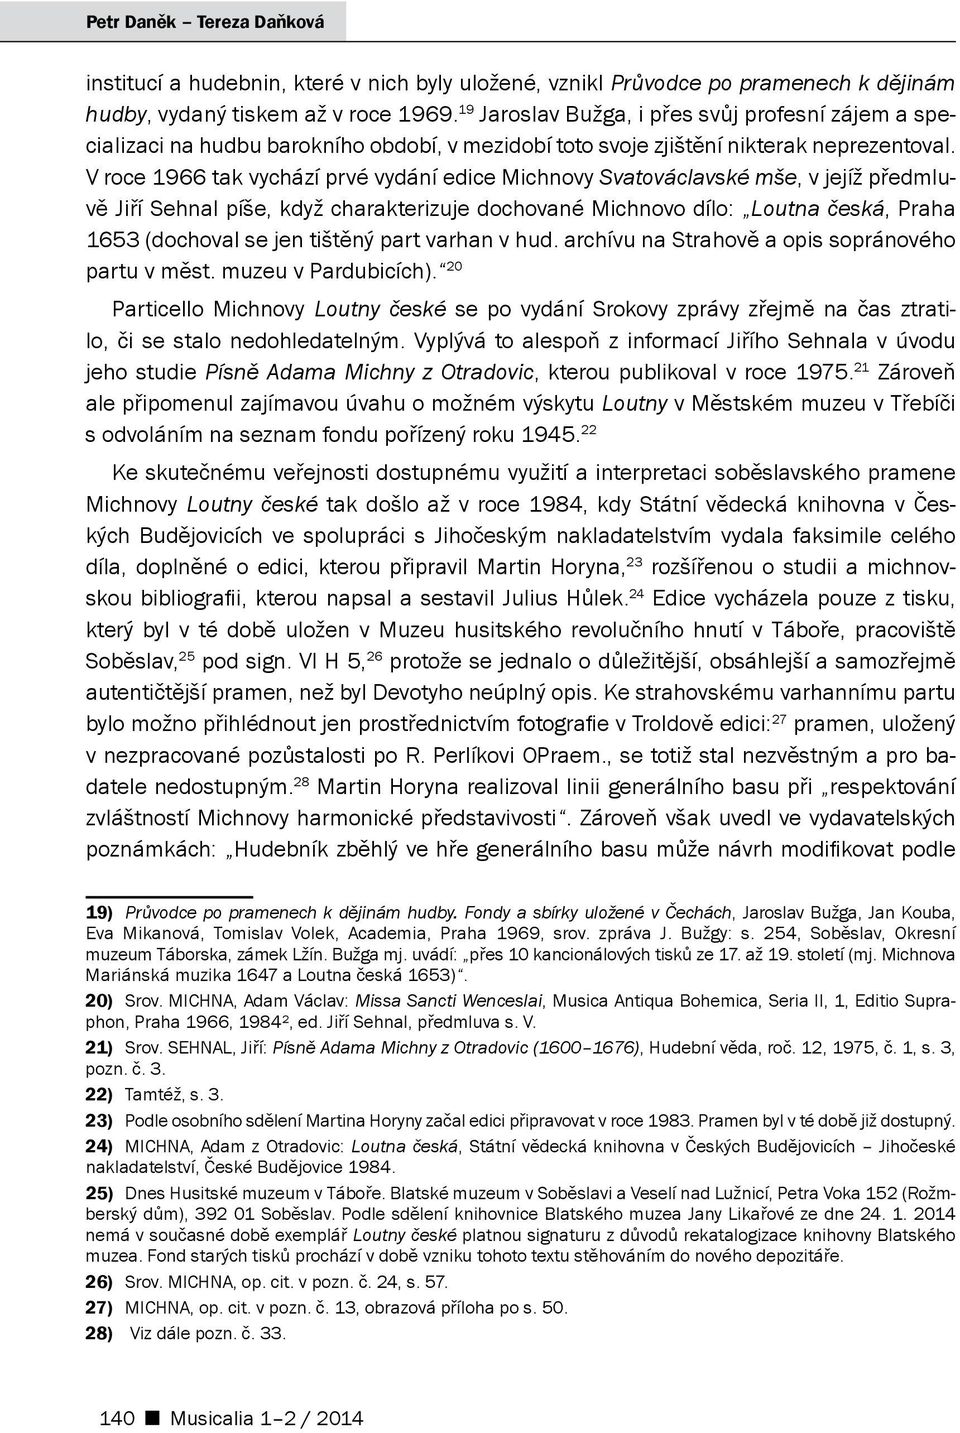 V roce 1966 tak vychází prvé vydání edice Michnovy Svatováclavské mše, v jejíž předmluvě Jiří Sehnal píše, když charakterizuje dochované Michnovo dílo: Loutna česká, Praha 1653 (dochoval se jen